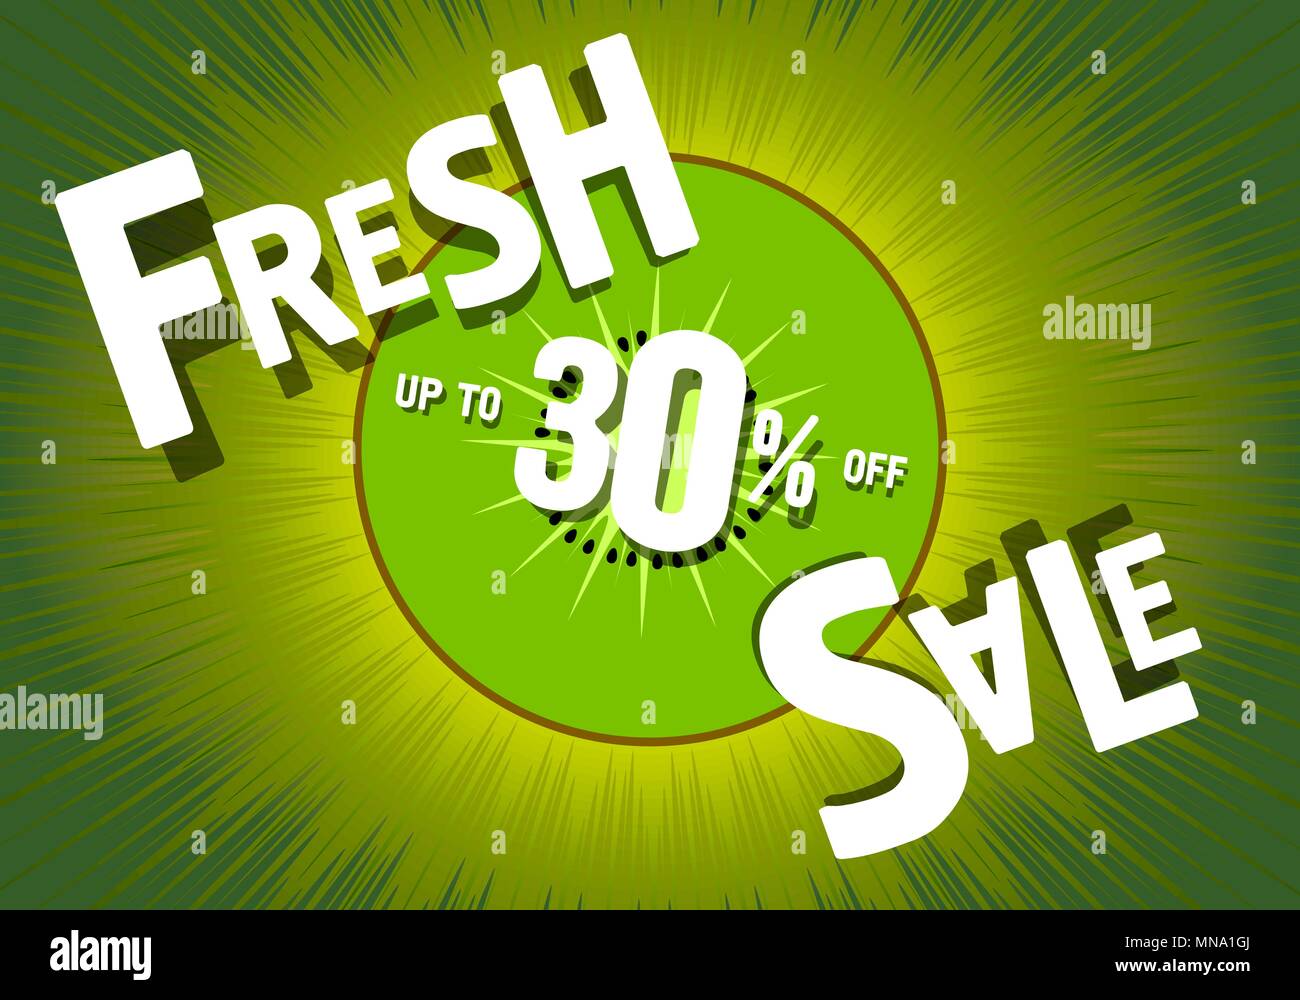 Vente frais de 30 pour cent. Fond vert, fruits kiwi. Promotions d'été. poster. Pour les stocks des magasins Illustration de Vecteur